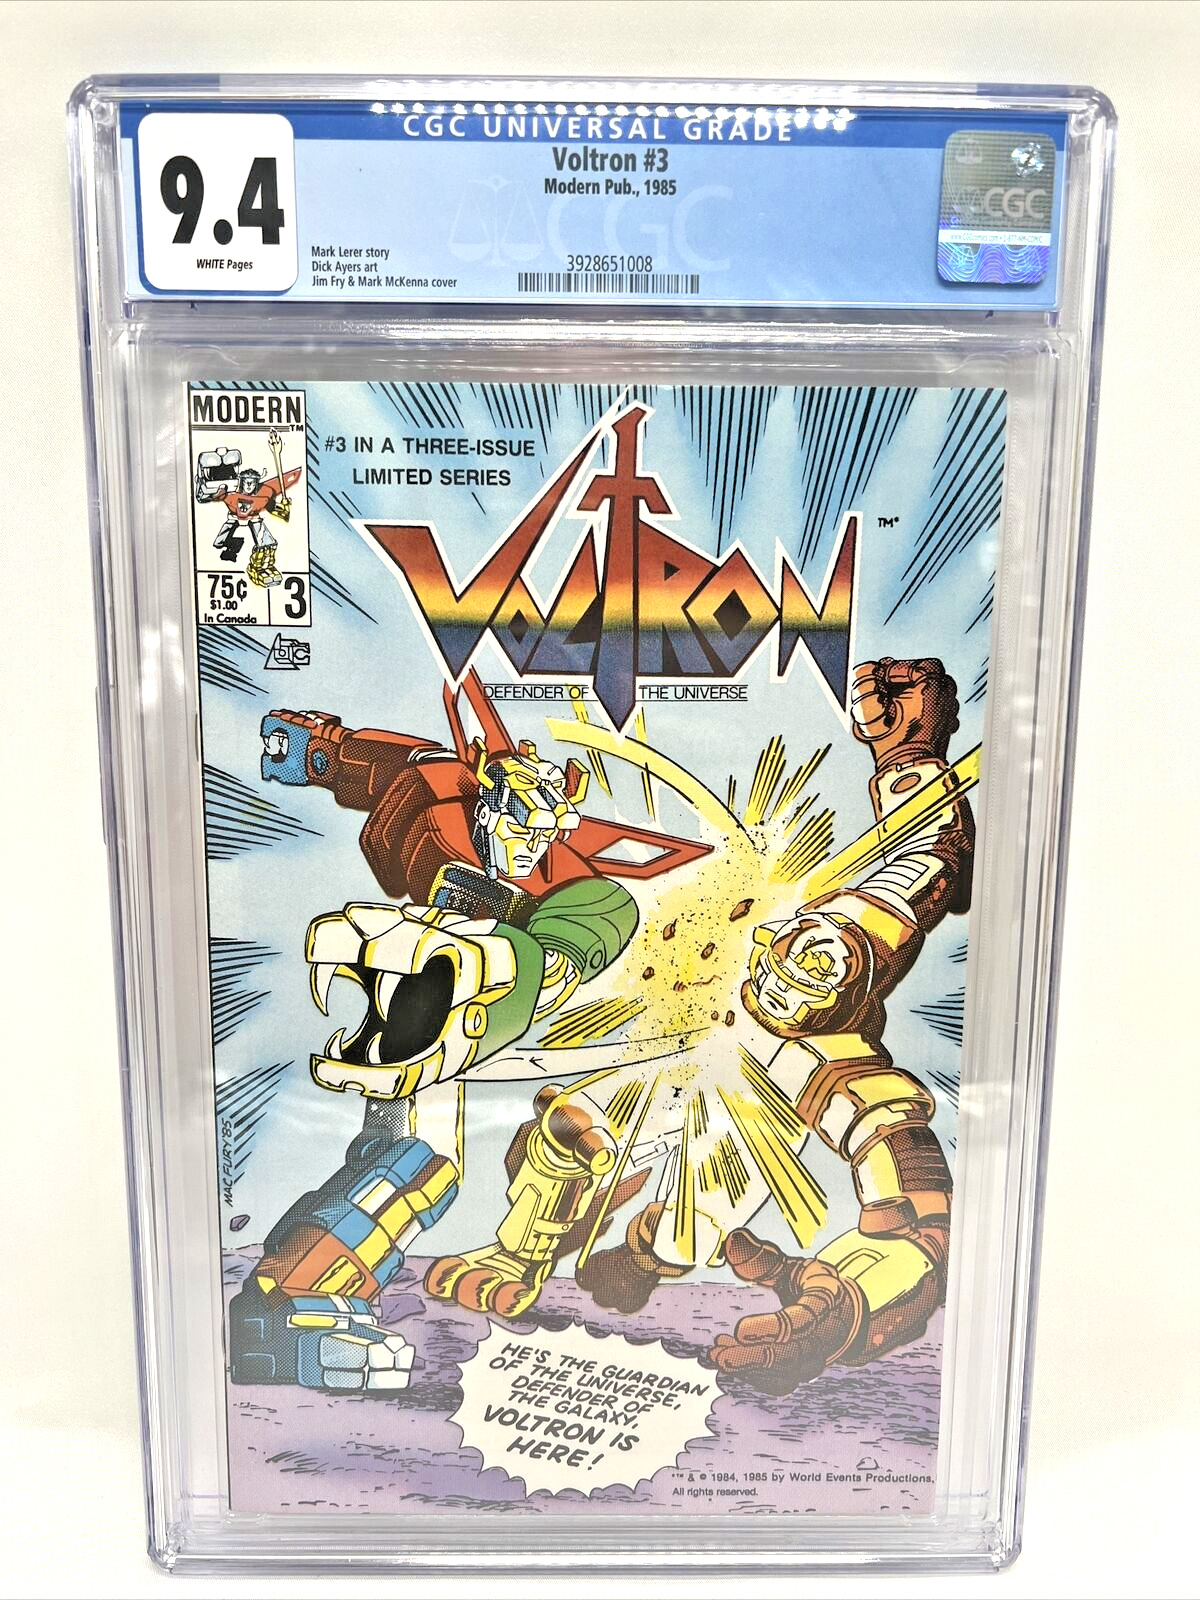 Voltron #3 CGC 9.4 - RARE VINTAGE GRADED COMIC BOOK